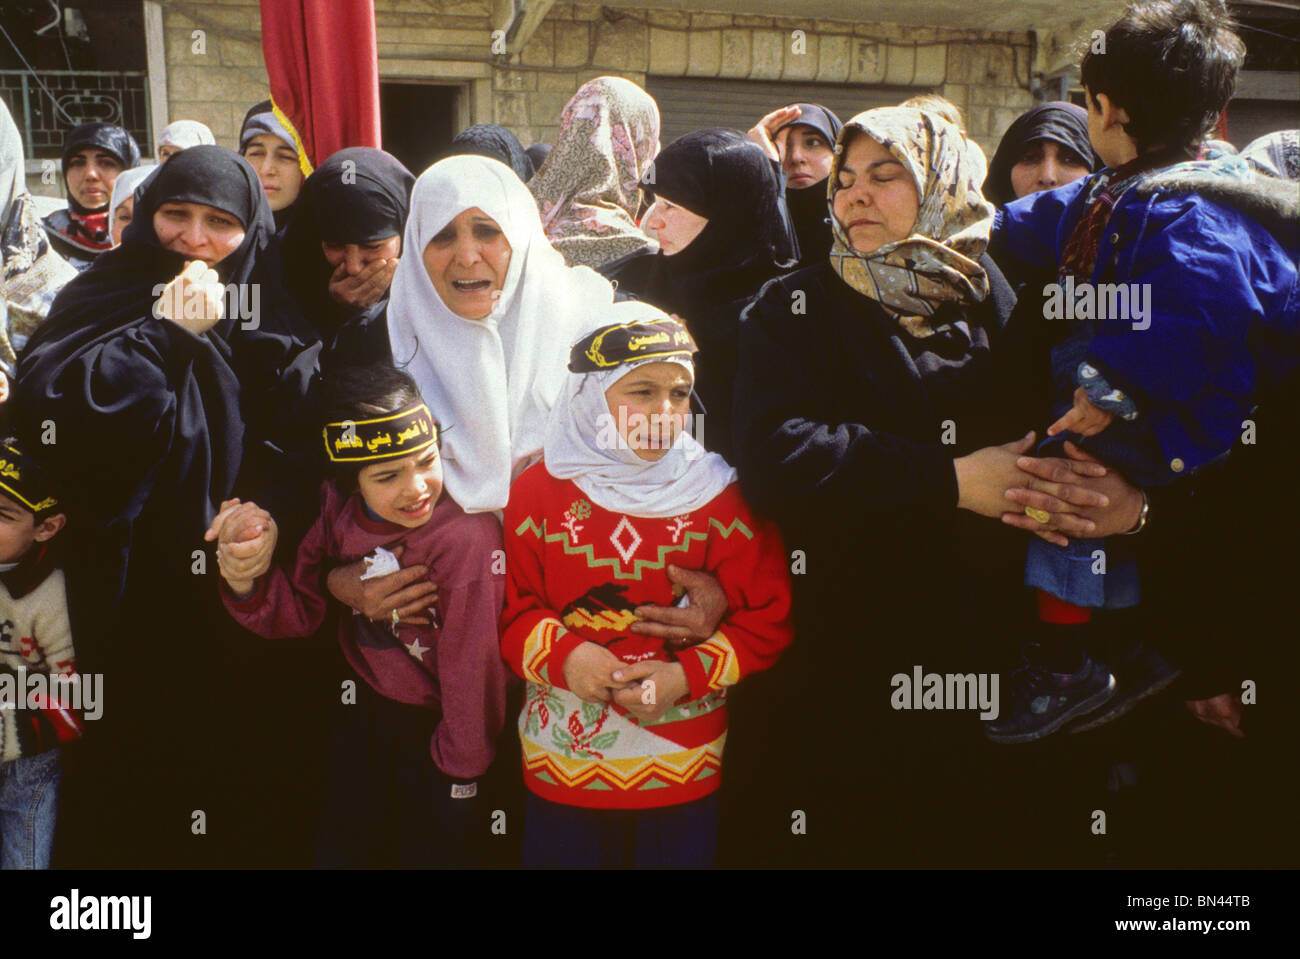 Les funérailles d'un membre du Hezbollah au Sud Liban en 1997 Banque D'Images